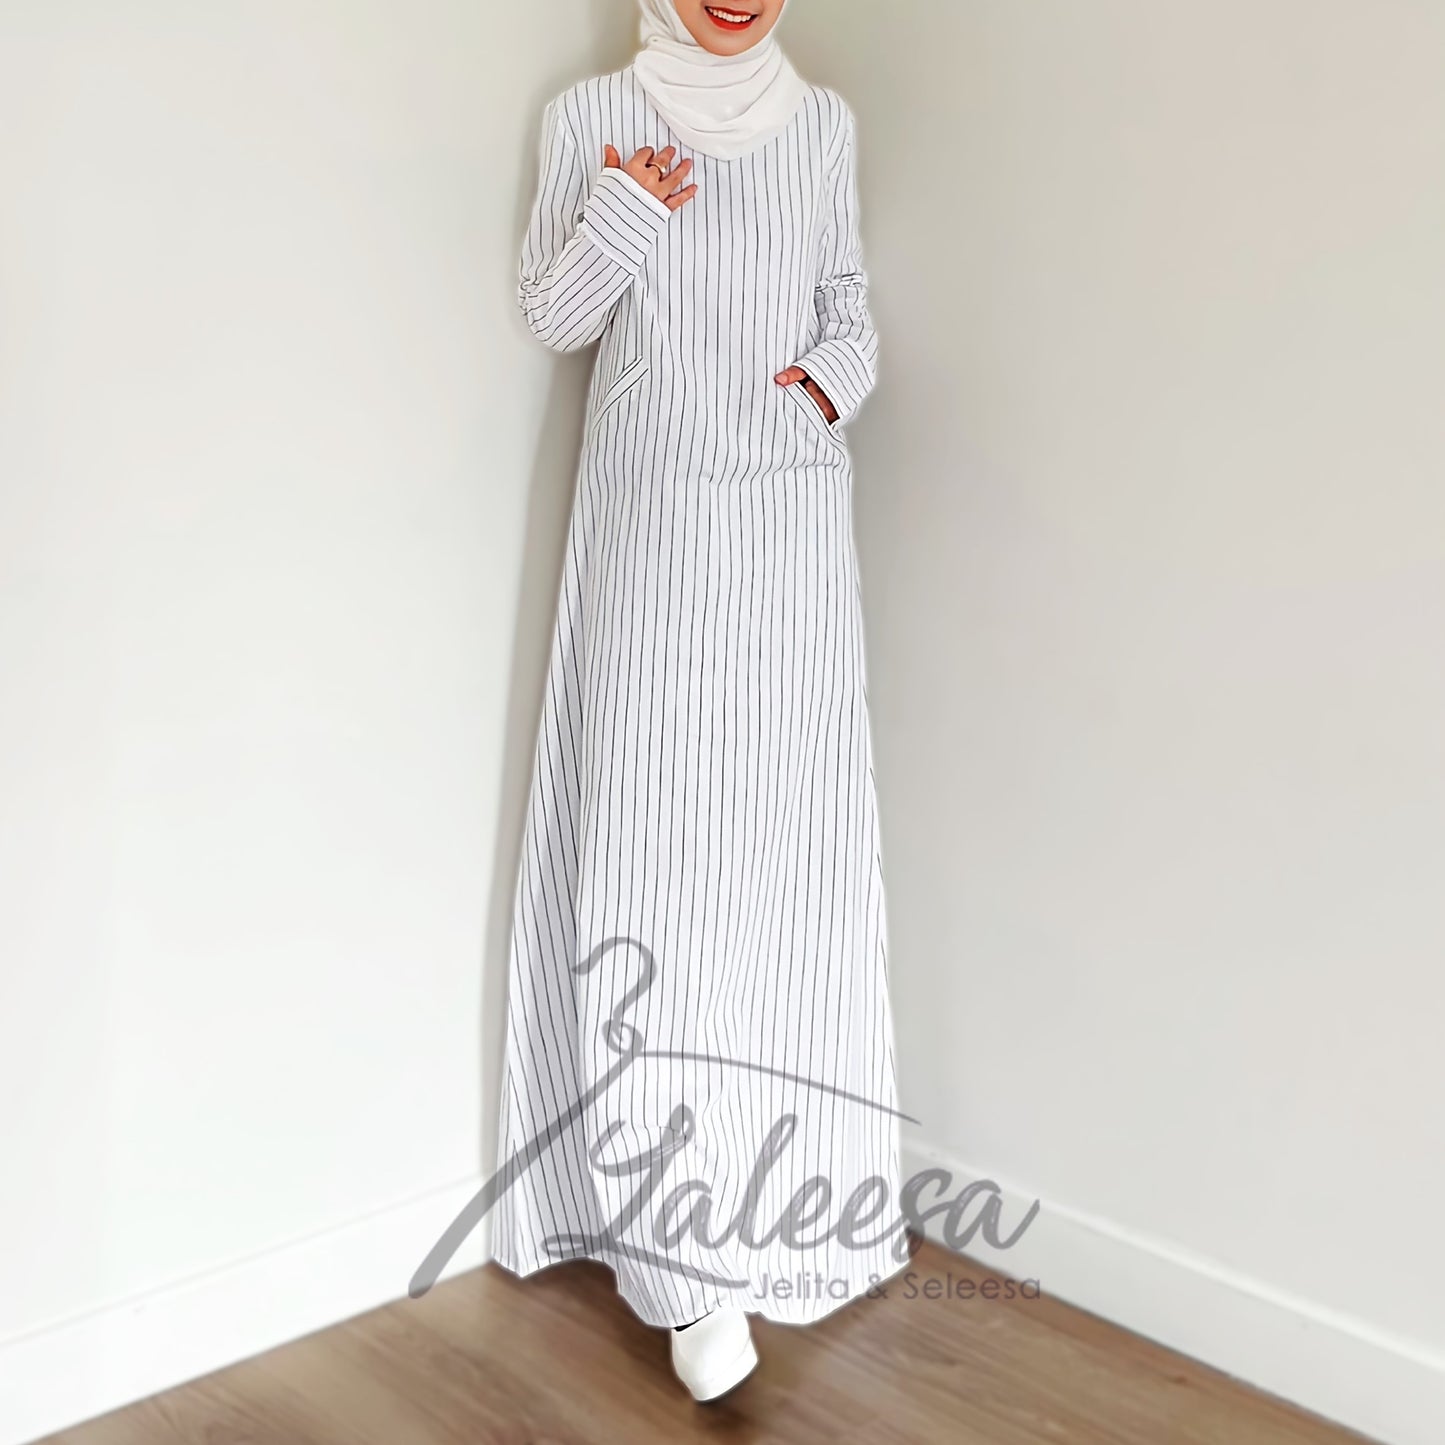 LALEESA LD220954 DRESS SAFIA Long Dress Muslimah Dress Women Dress Jubah Muslimah Jubah Abaya Baju Raya 2024